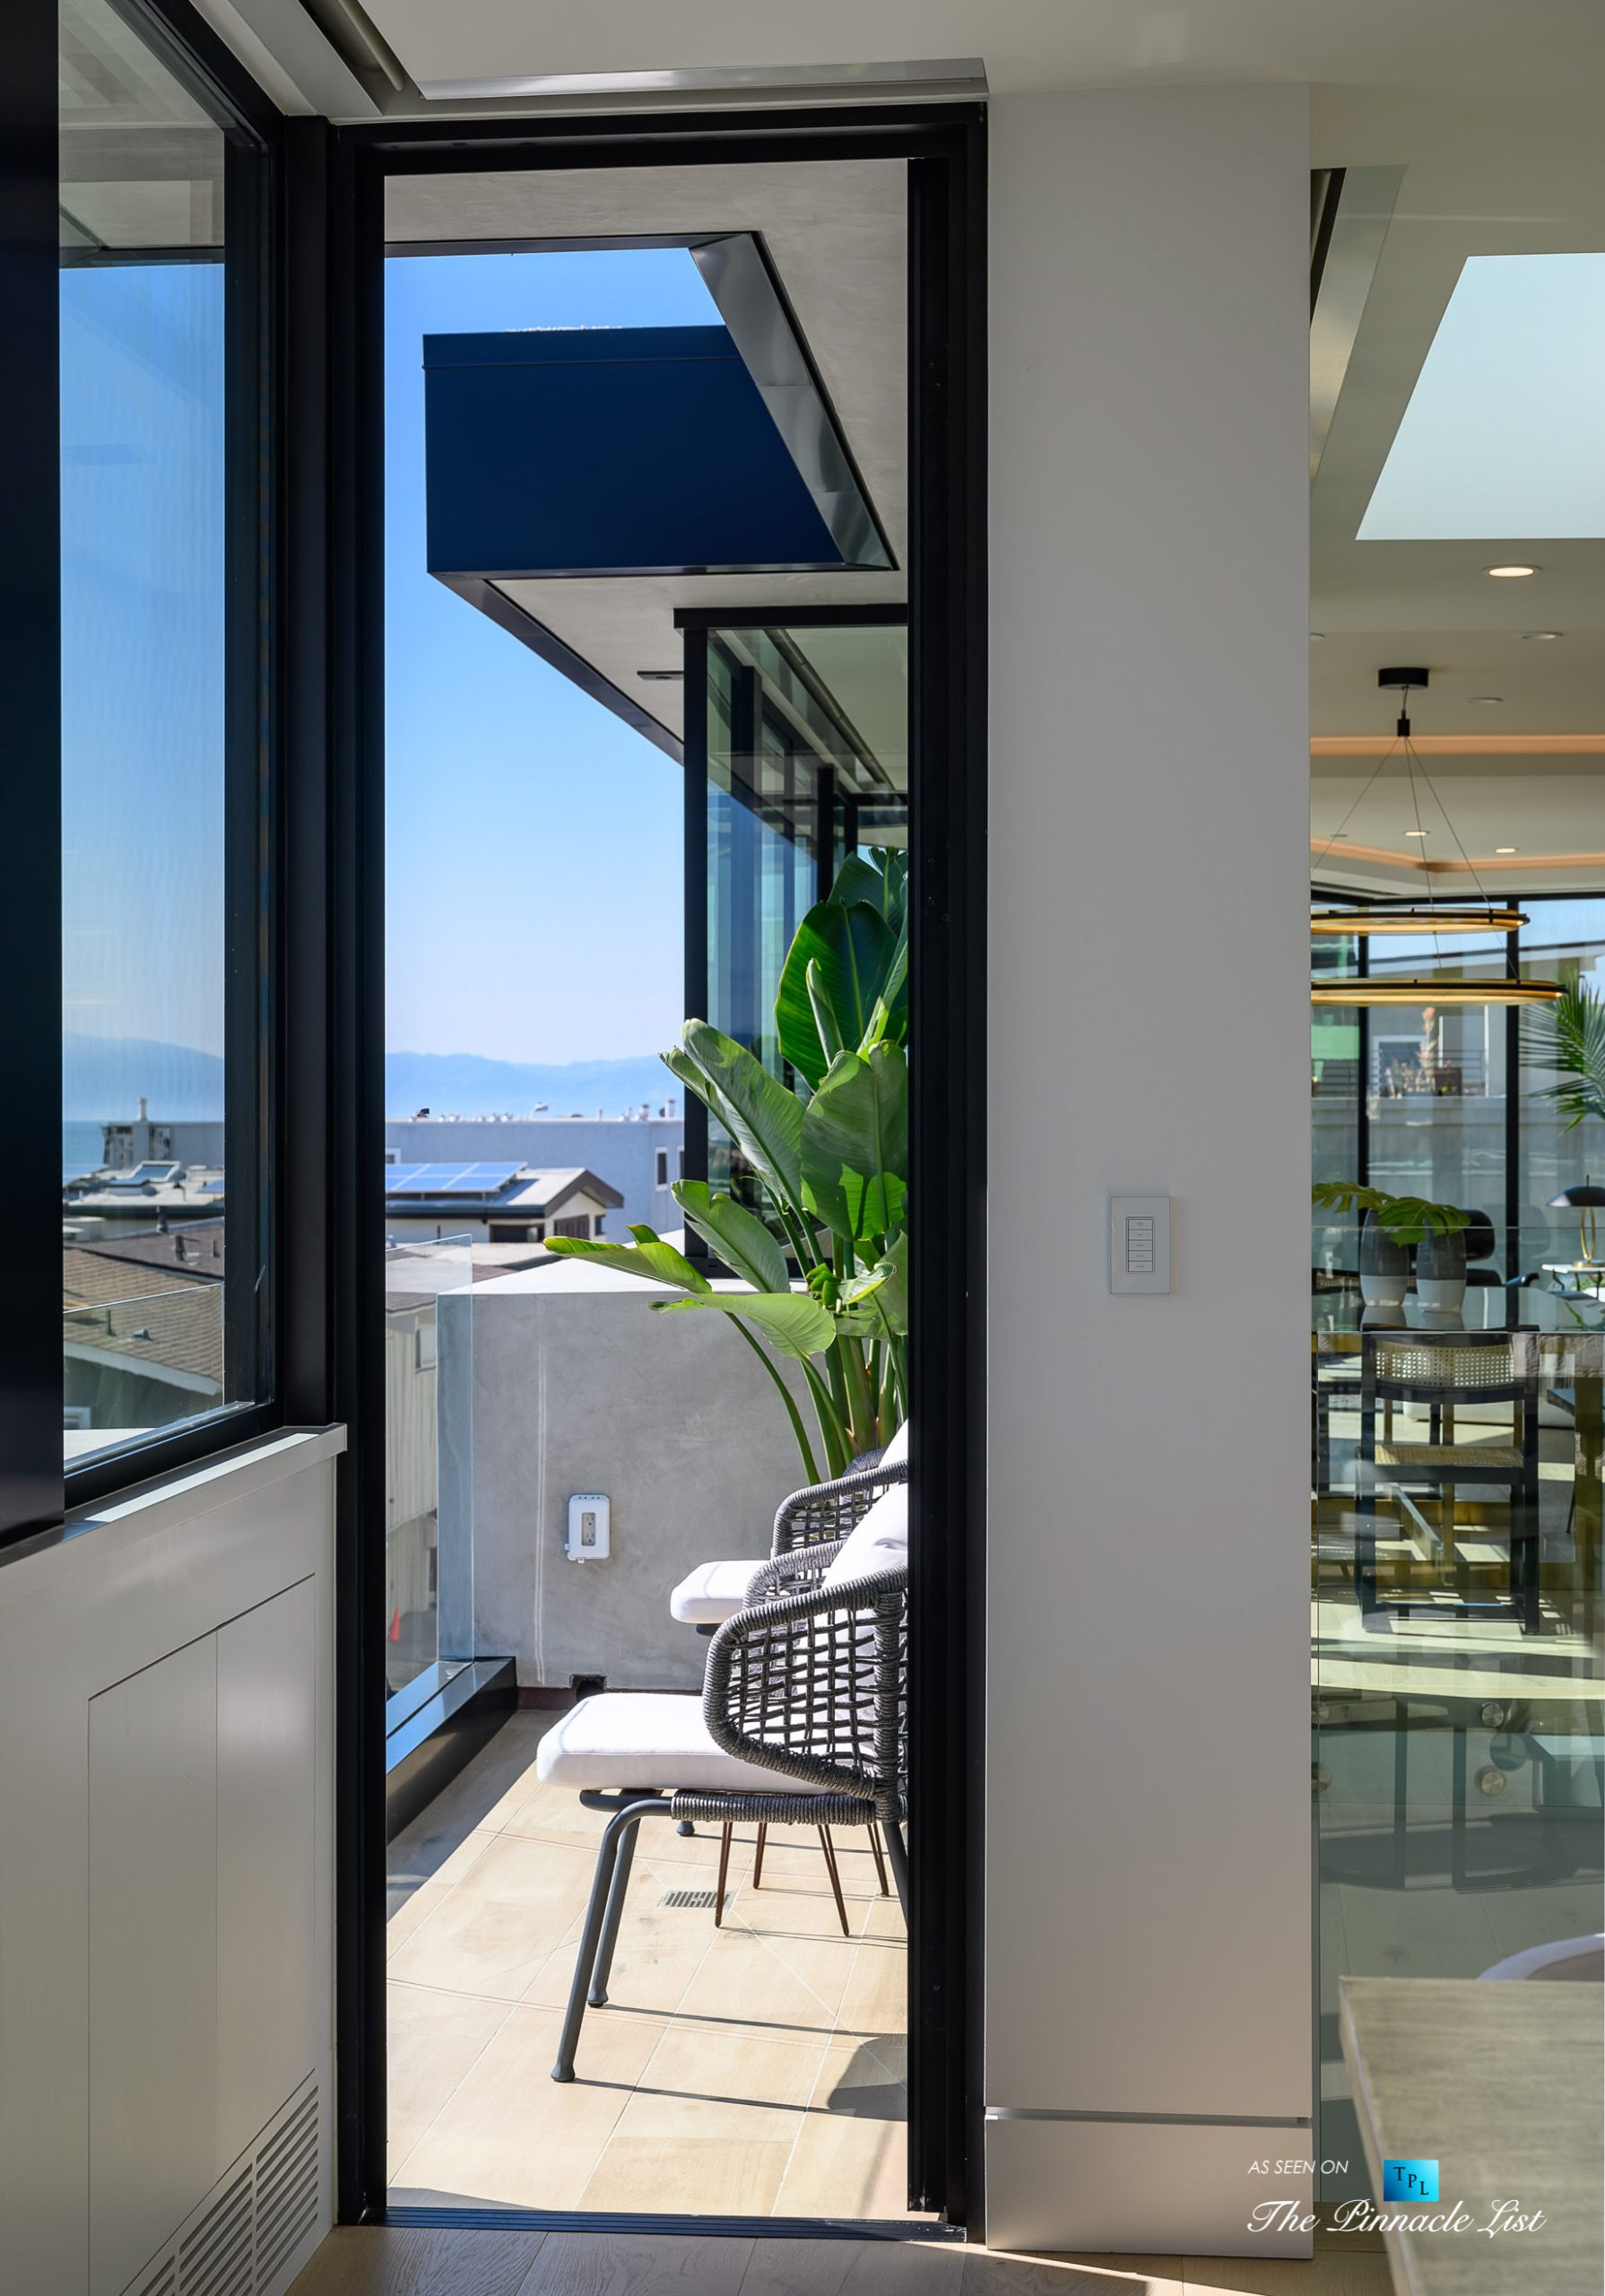 2016 Ocean Dr, Manhattan Beach, CA, USA - Private Deck - Luxury Real Estate - Modern Ocean View Home